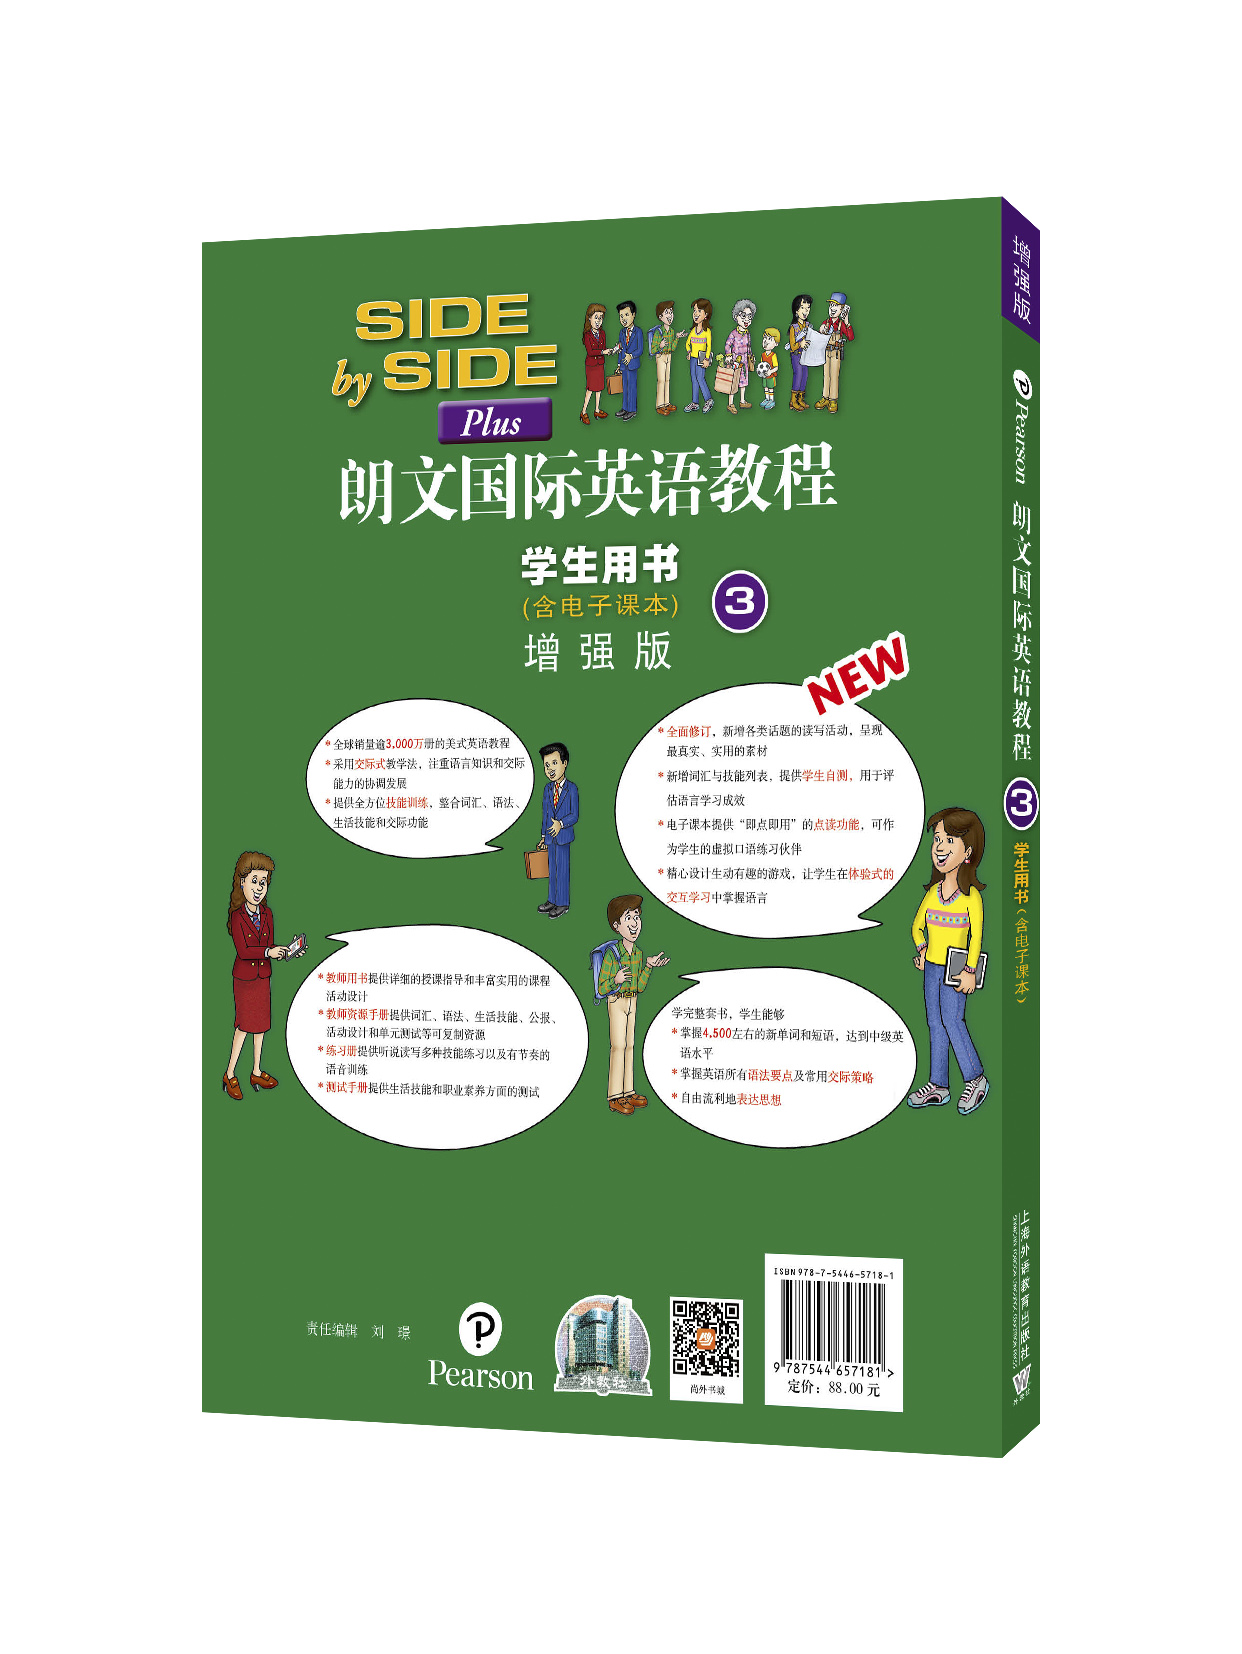 商品朗文国际英语教程 增强版 学生用书 含电子书 第3册 一书一码